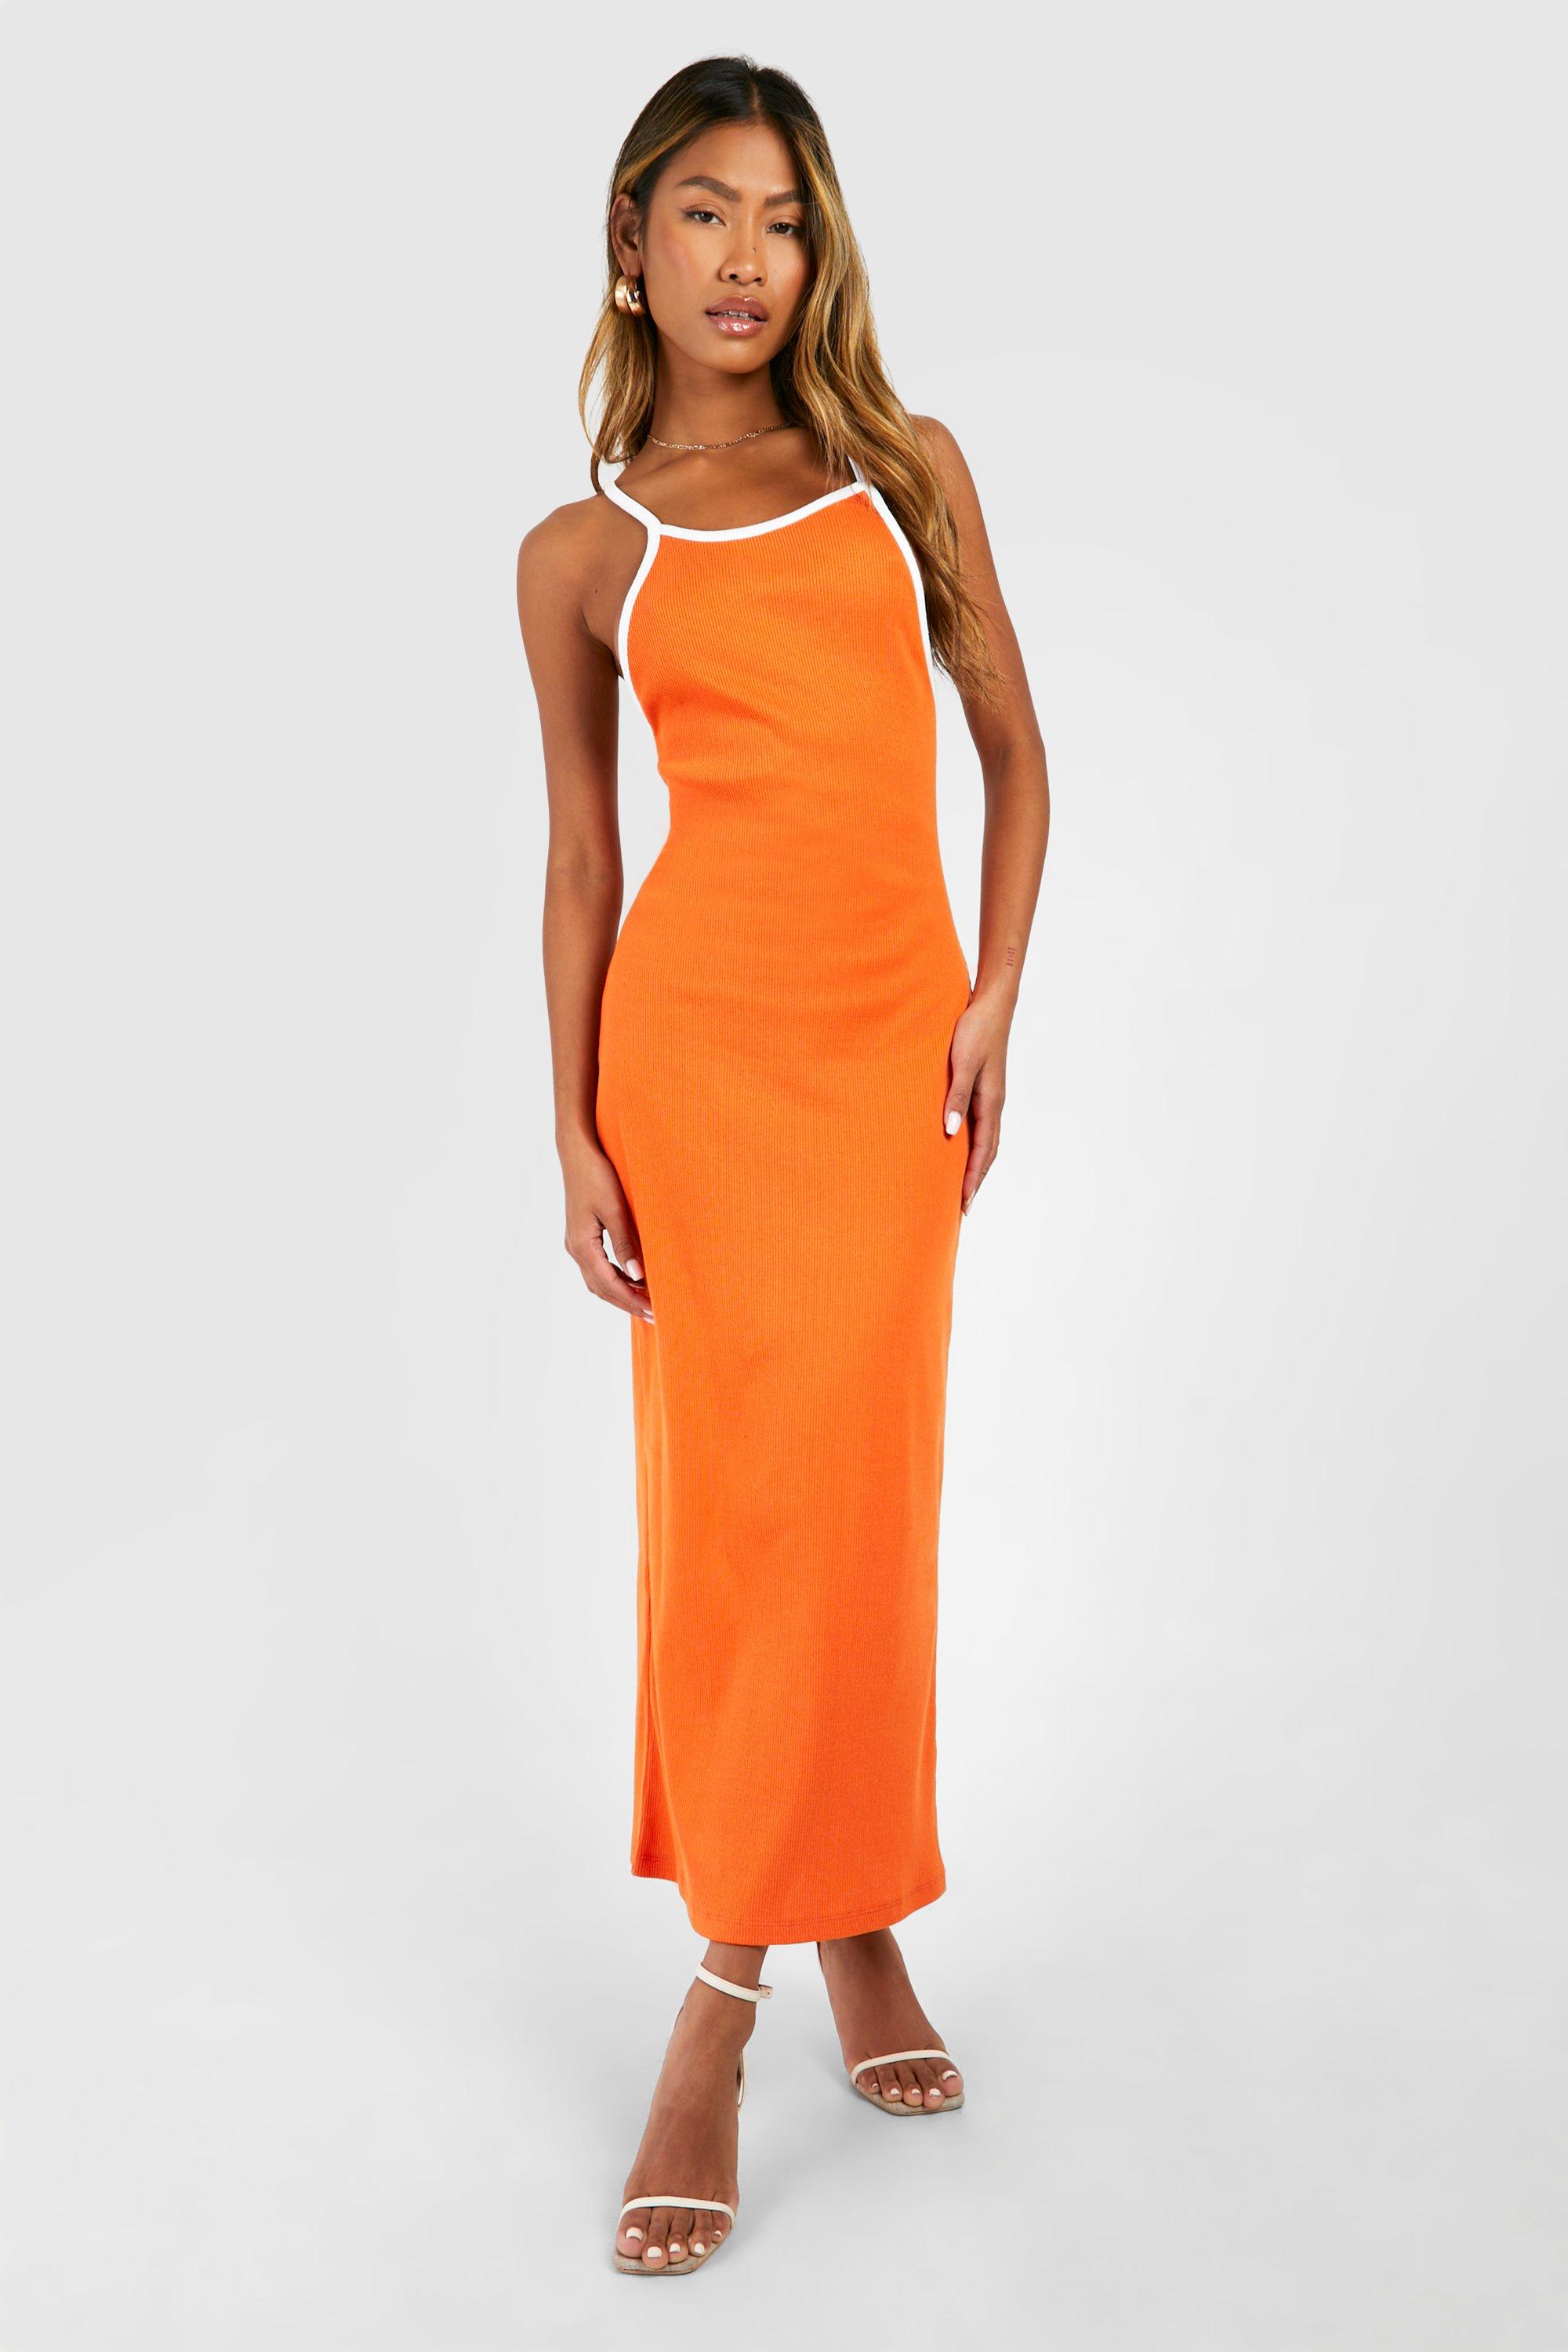 Boohoo Contrast Binding Low Scoop Racer Midaxi Dress, Orange